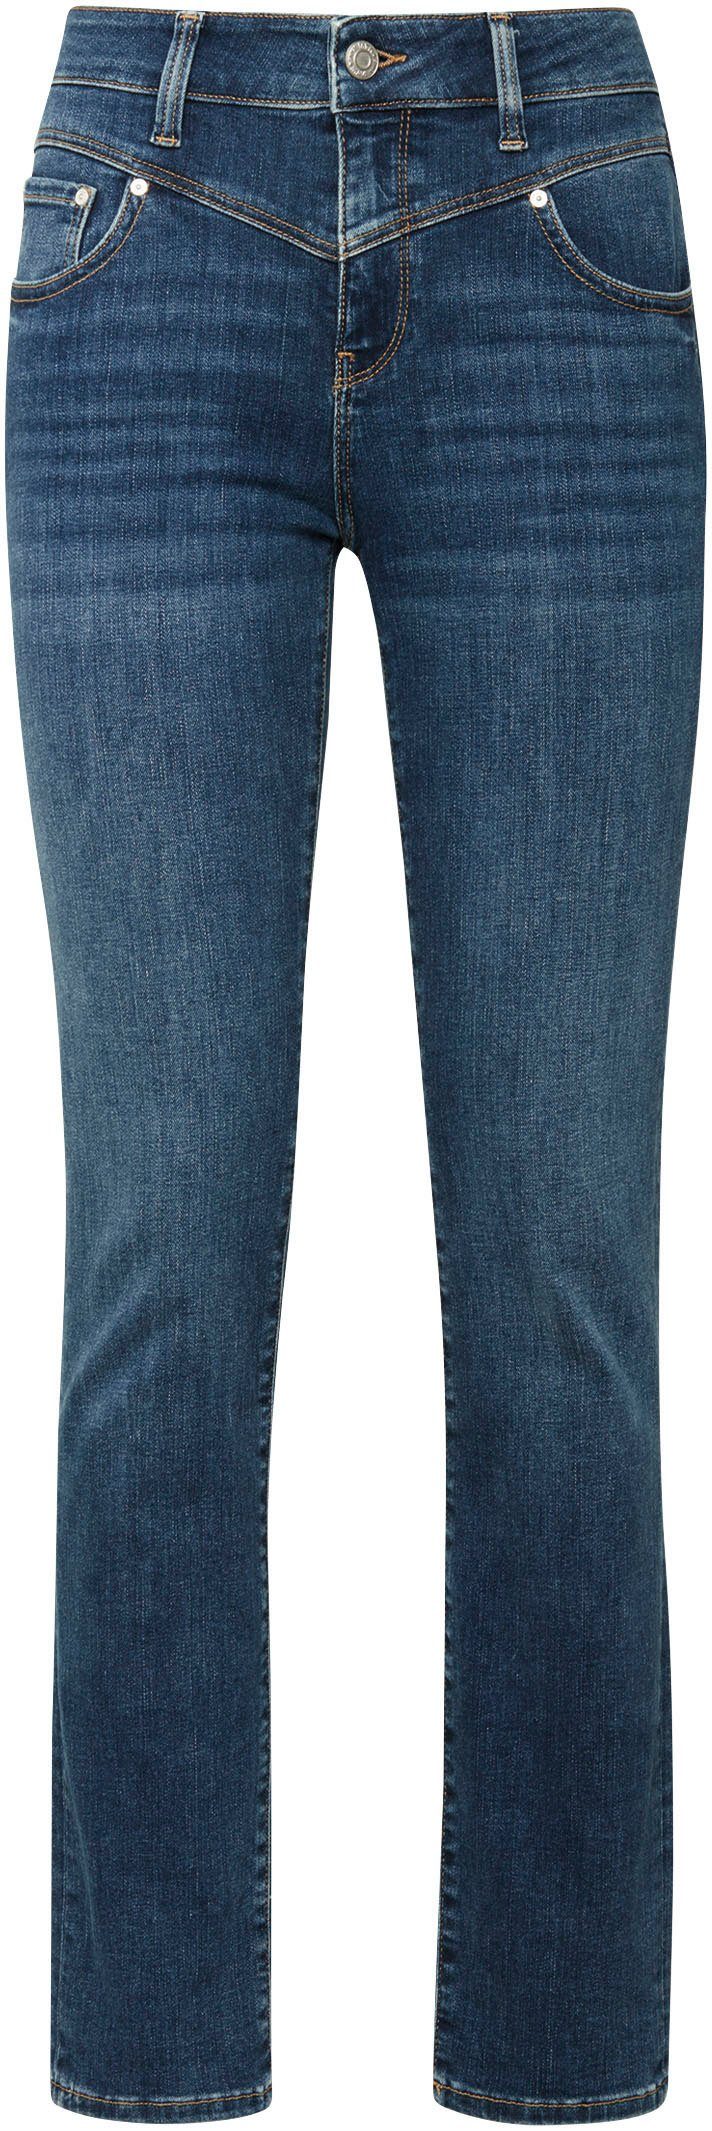 Mavi Slim-fit-Jeans trageangenehmer Stretchdenim dank blue) (mid hochwertiger blue shaded Verarbeitung mid